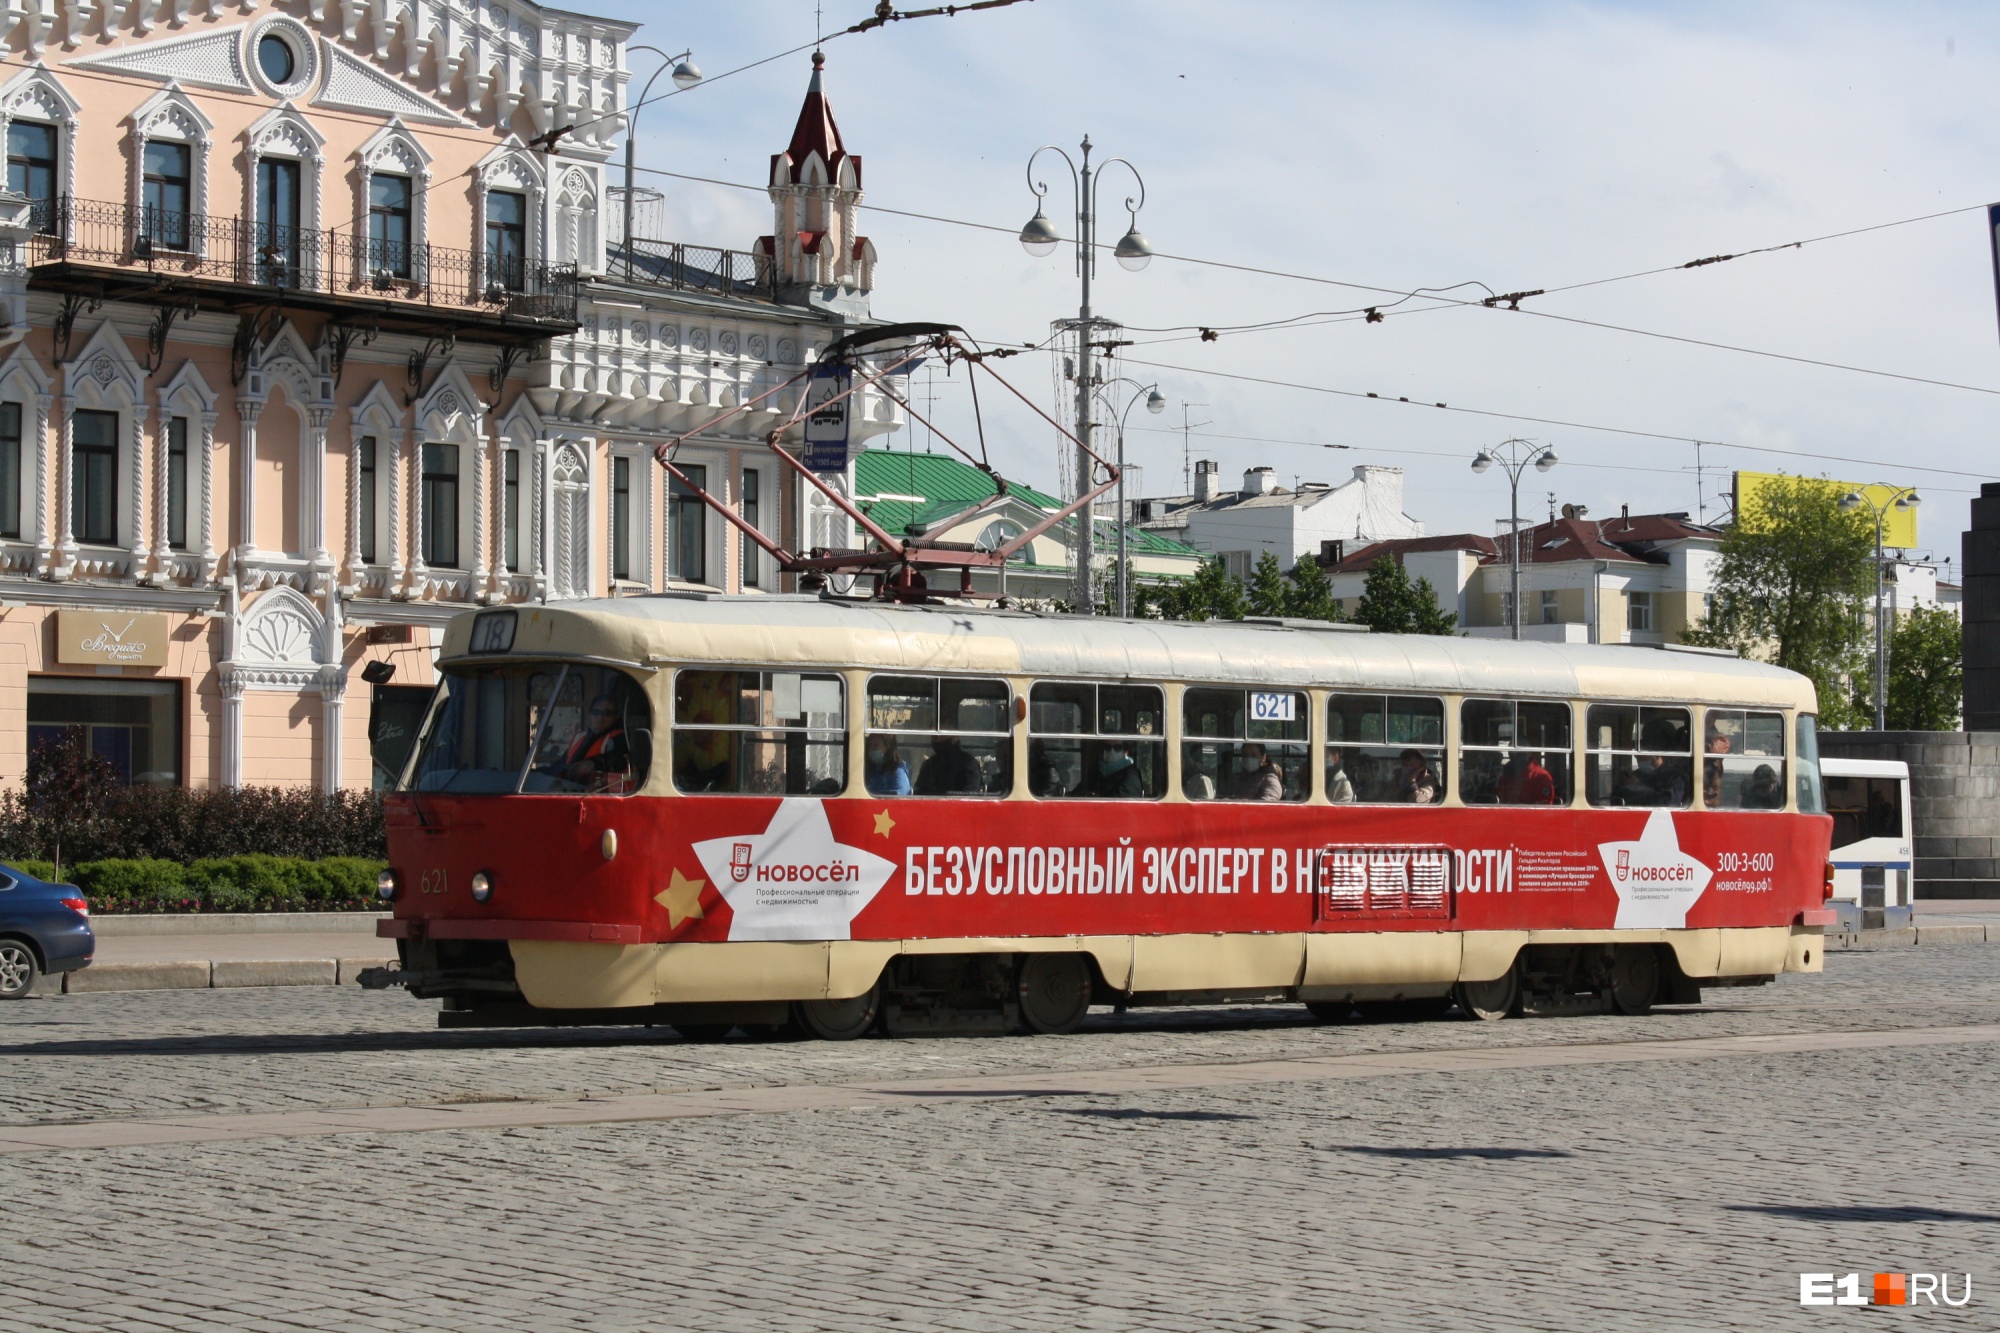 Ради бегунов из центра Екатеринбурга уберут общественный транспорт